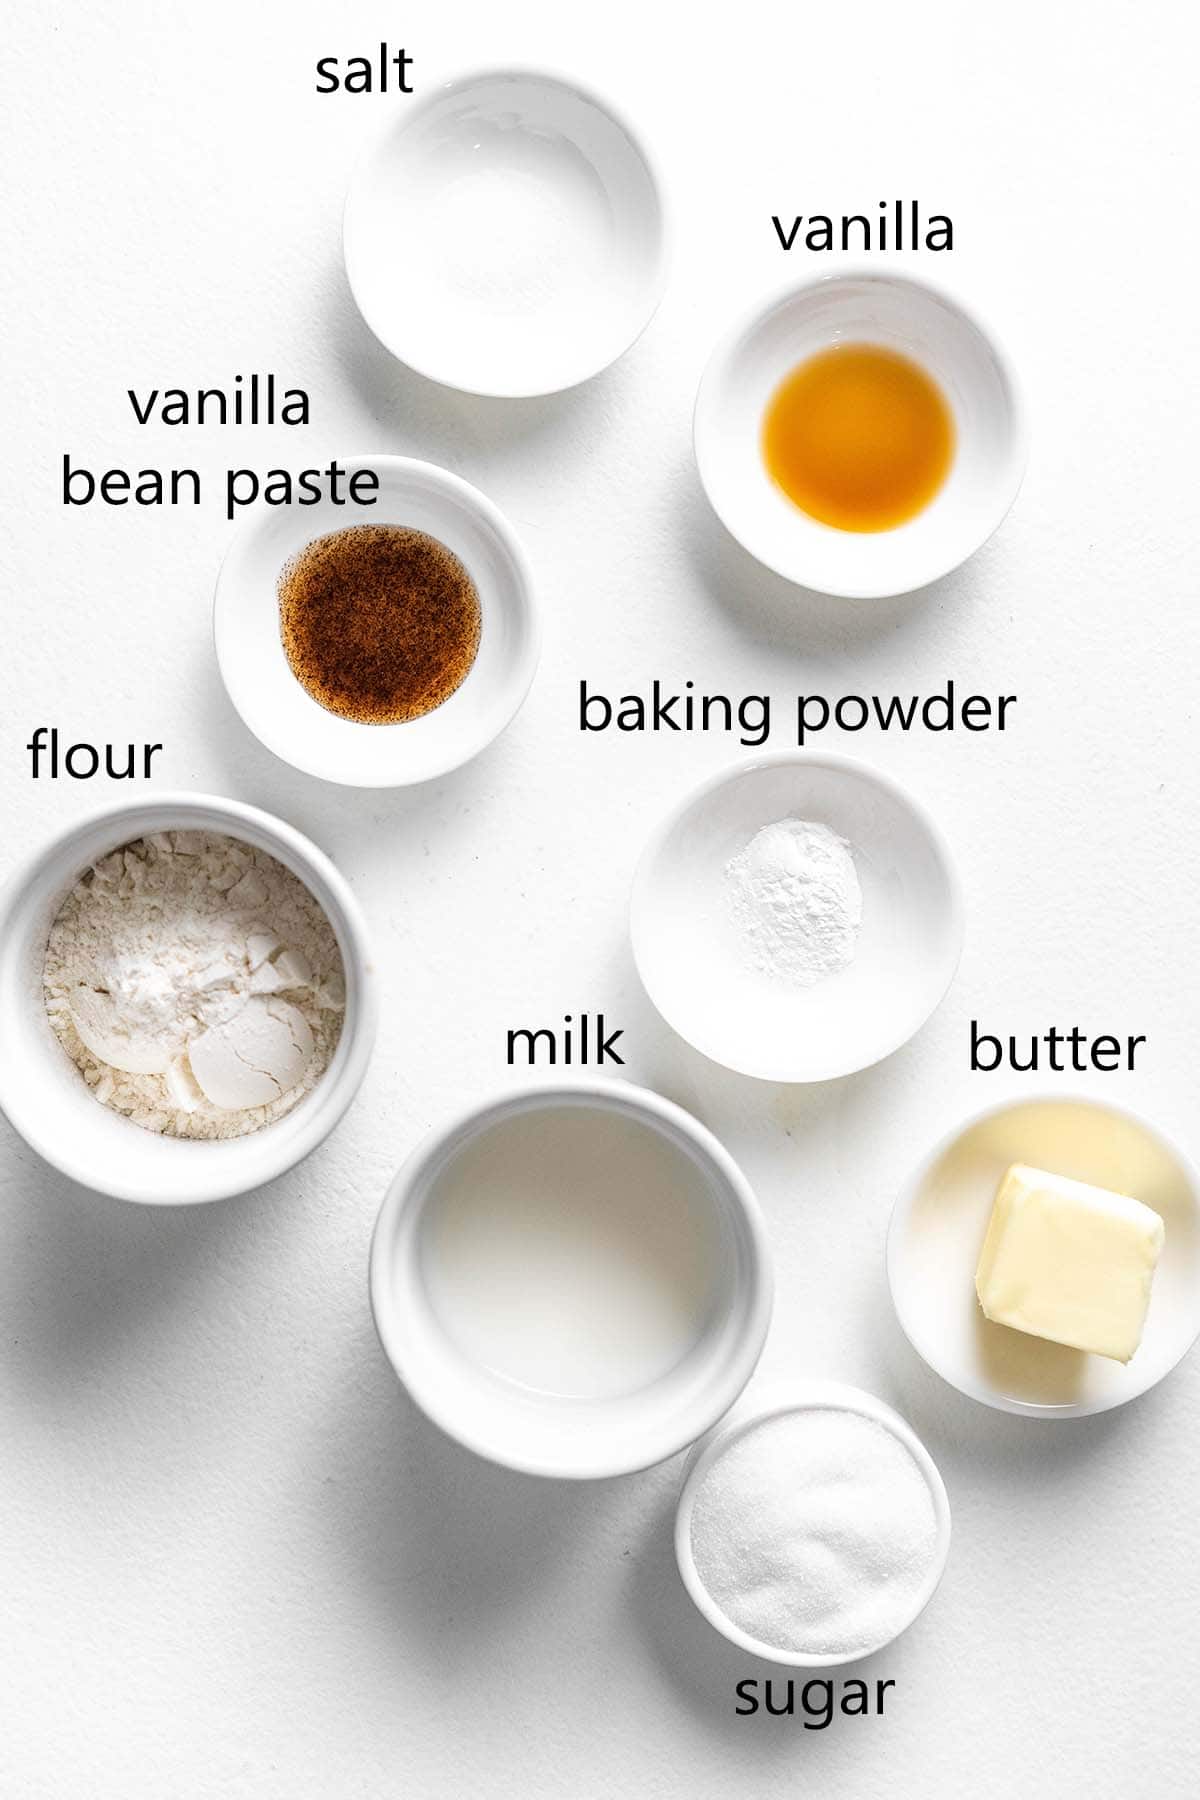 vanilla mug cake ingredients